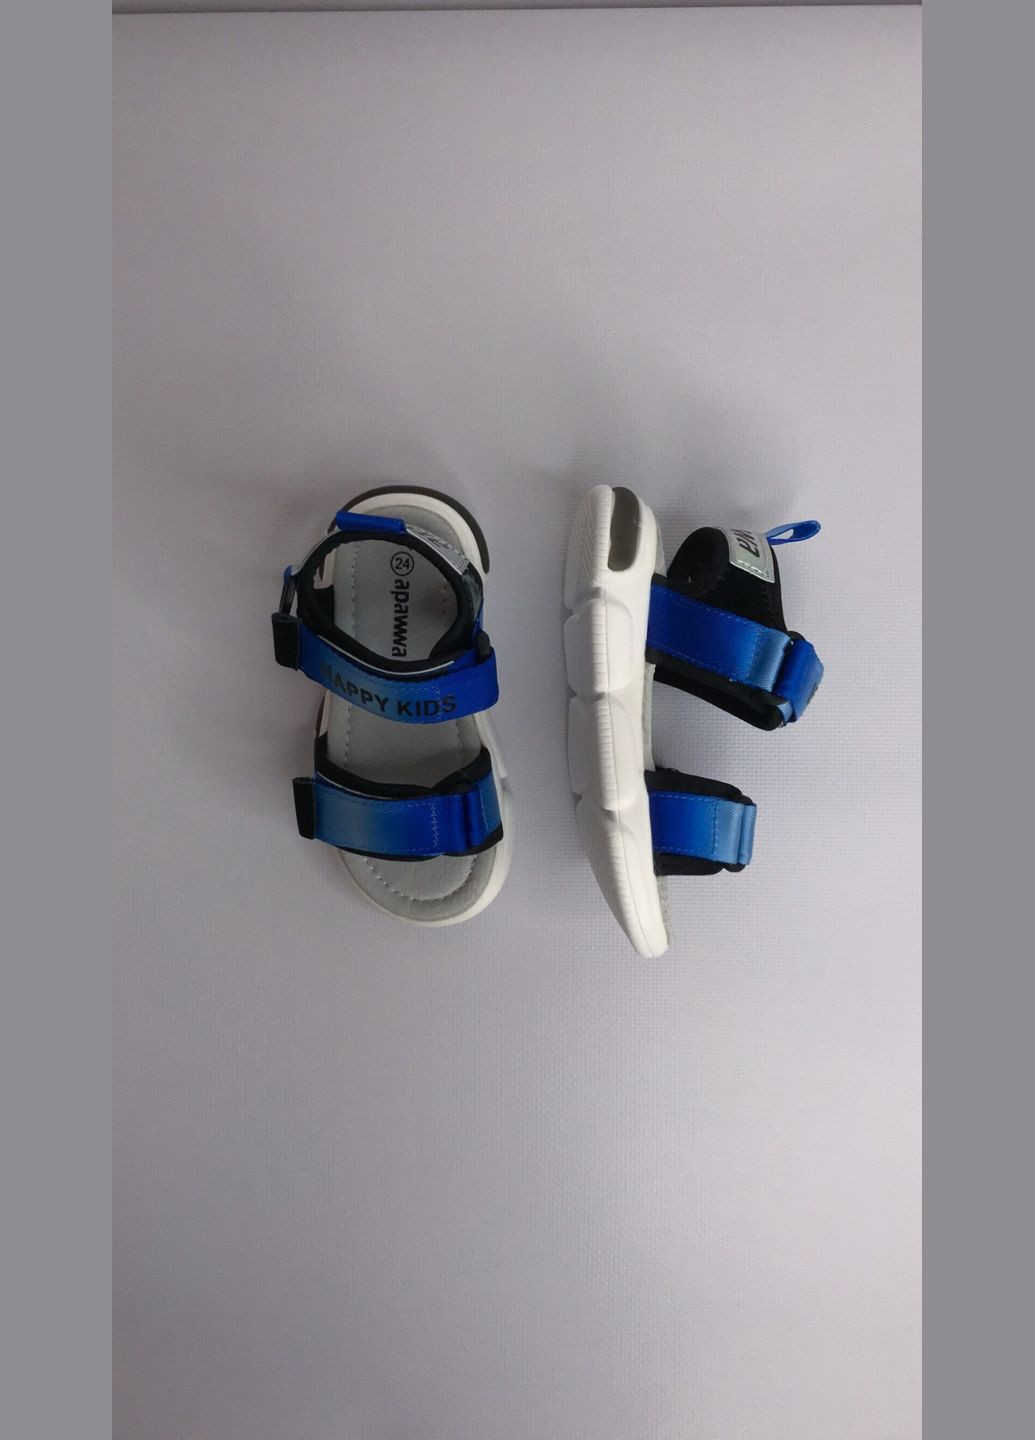 Синие детские сандалии с подсветкой 21 г 14,3 см синий артикул б319 Apawwa